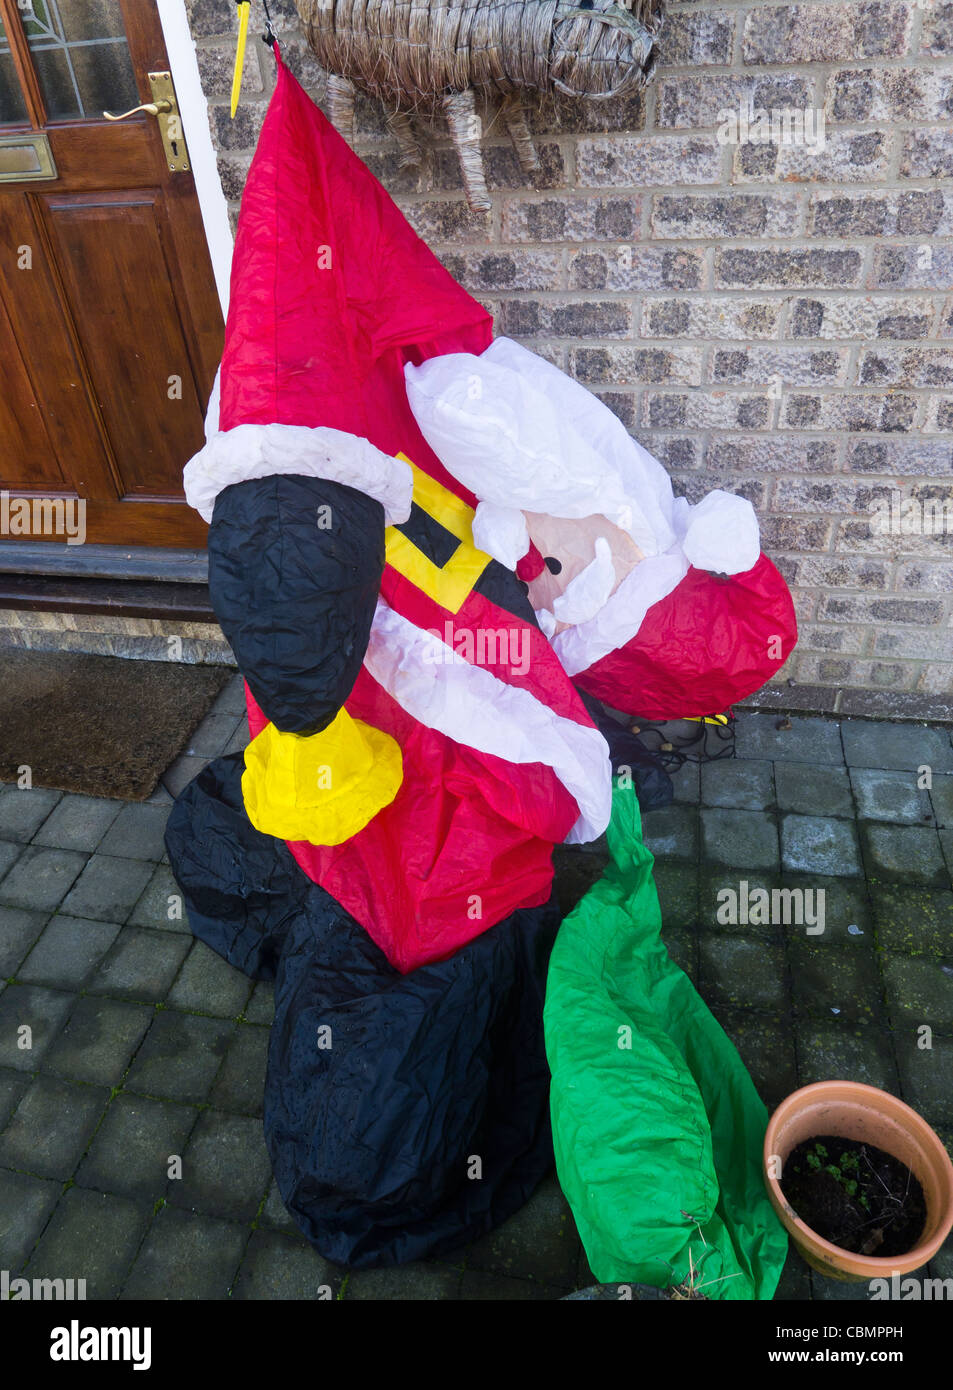 Inflatable Father Christmas deflated. Stock Photo